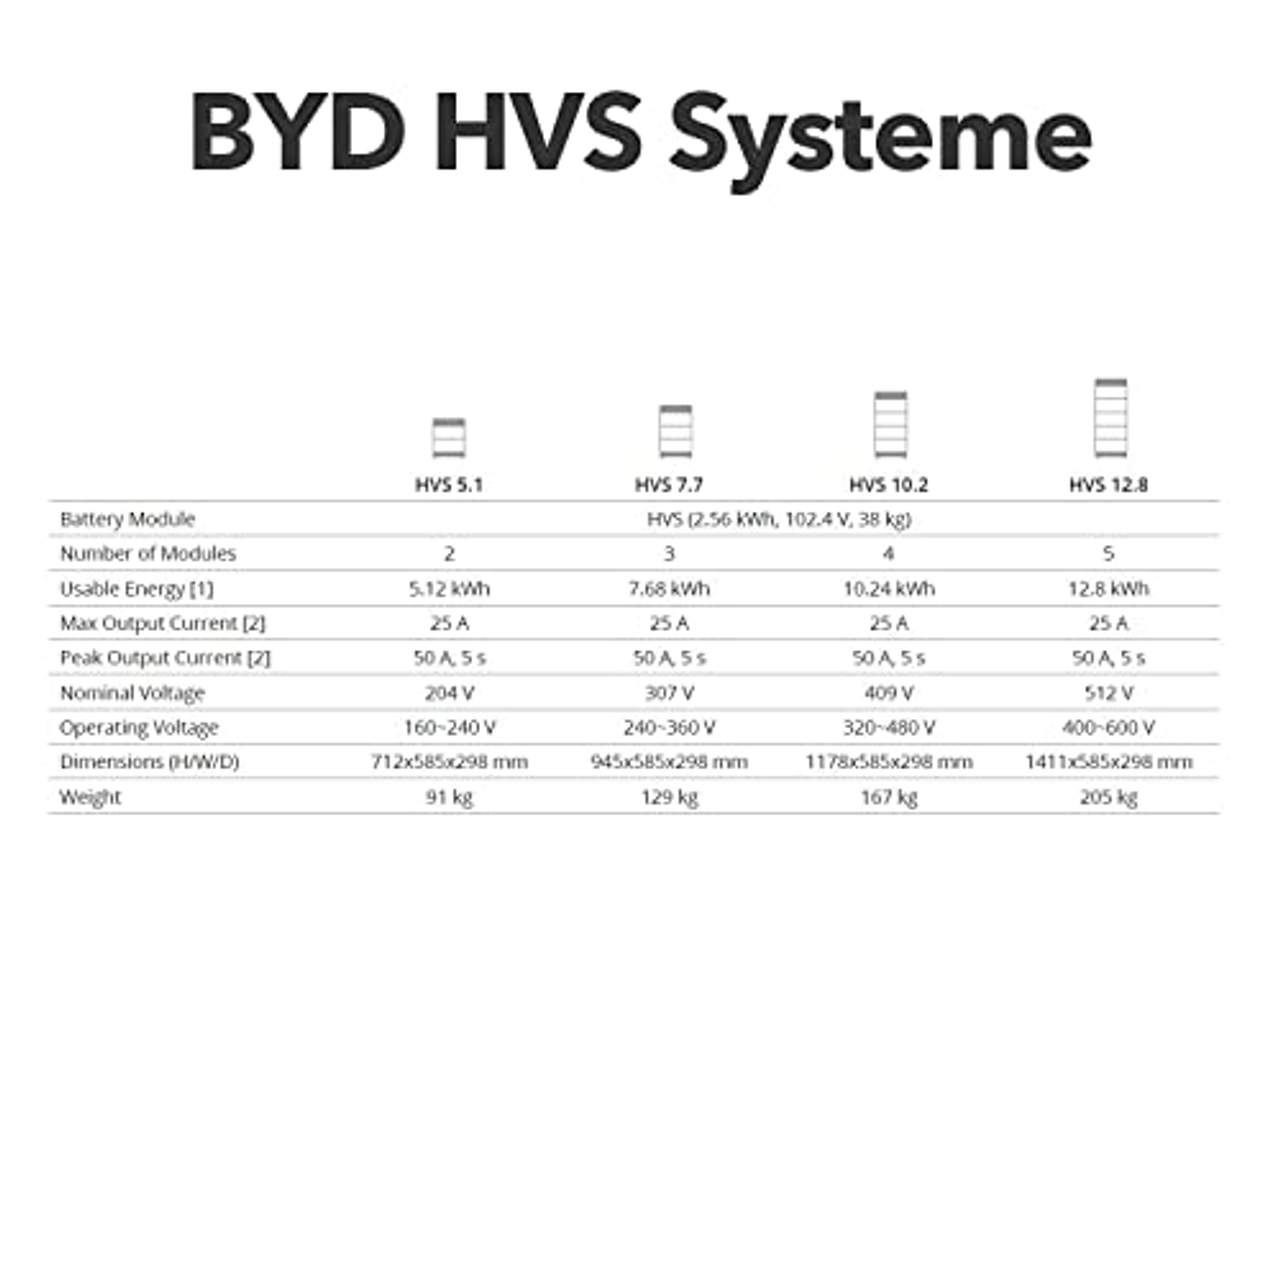 Power Werk BYD HVS Speicher mit 10.2 kWh